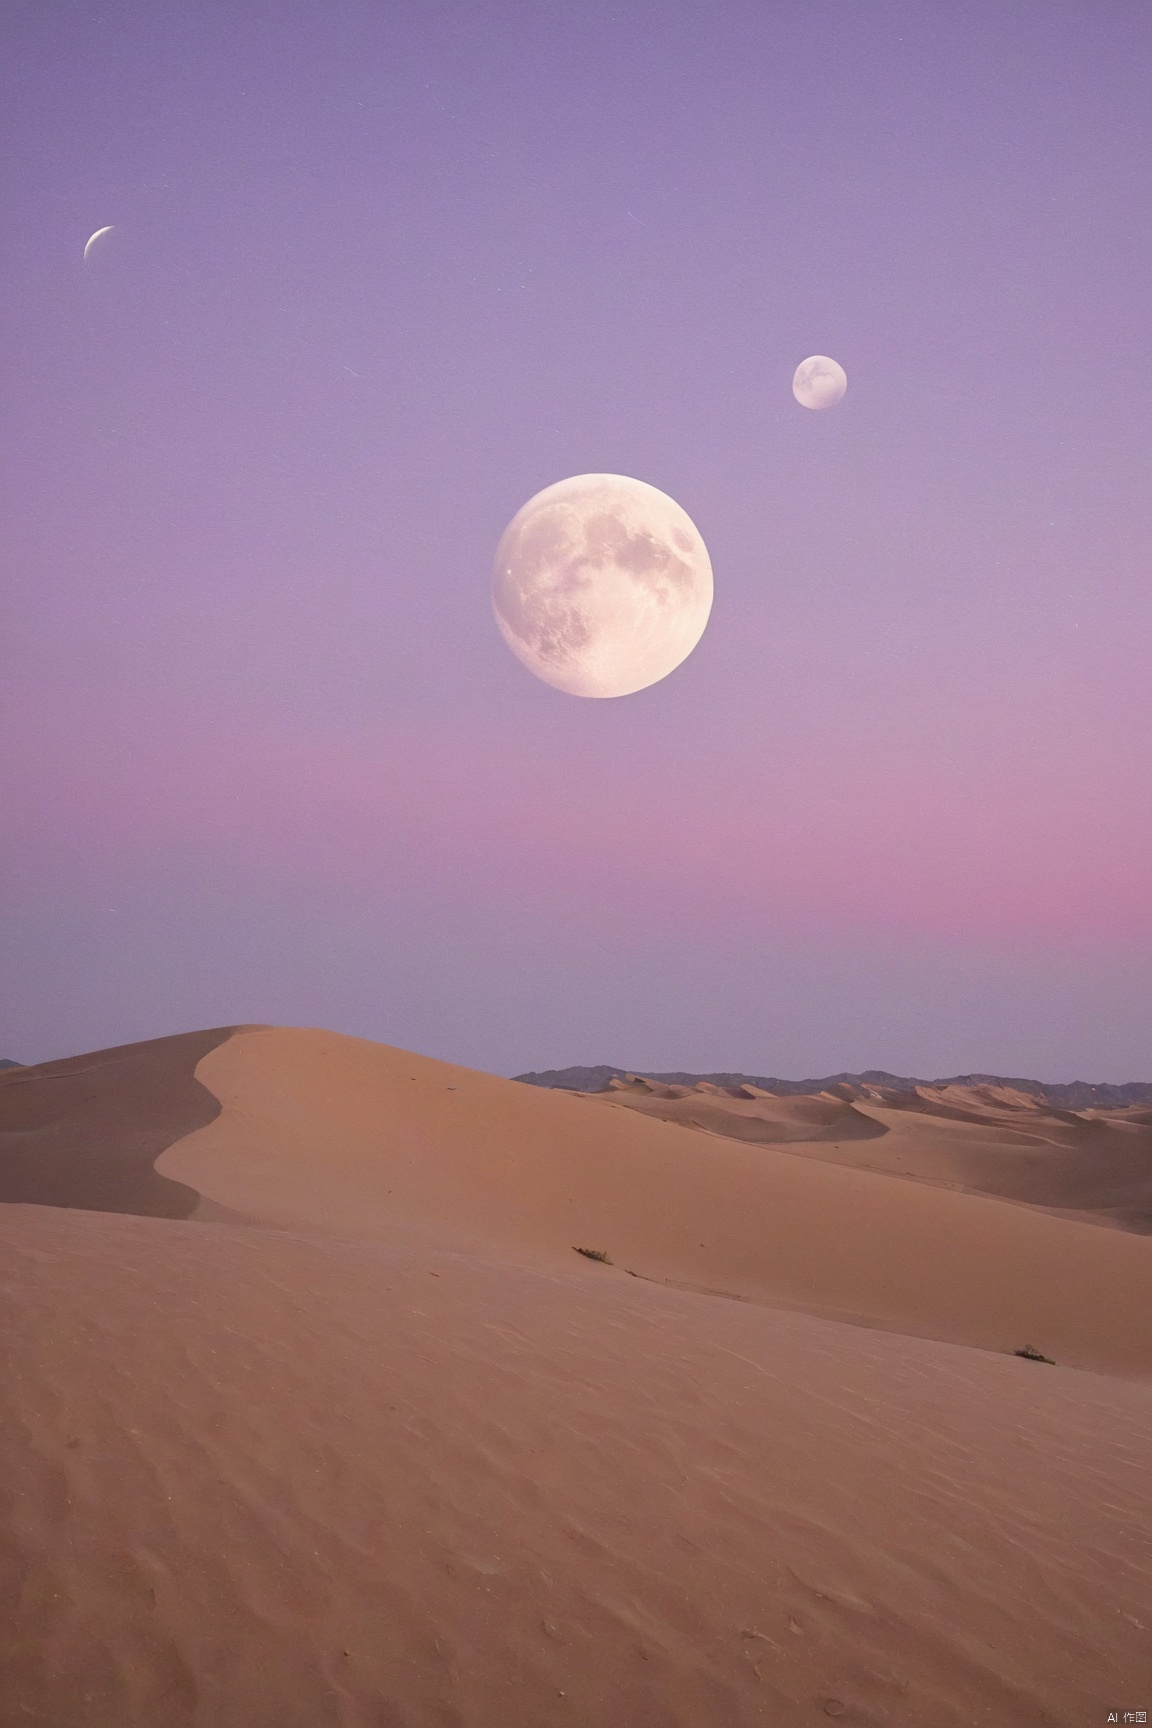 sky_moon,pink-purple sky,full moon,scenery,desert,1girl,,star,more detail XL,xxmixgirl, xxmix_girl, monkren, qingyi, desert_sky